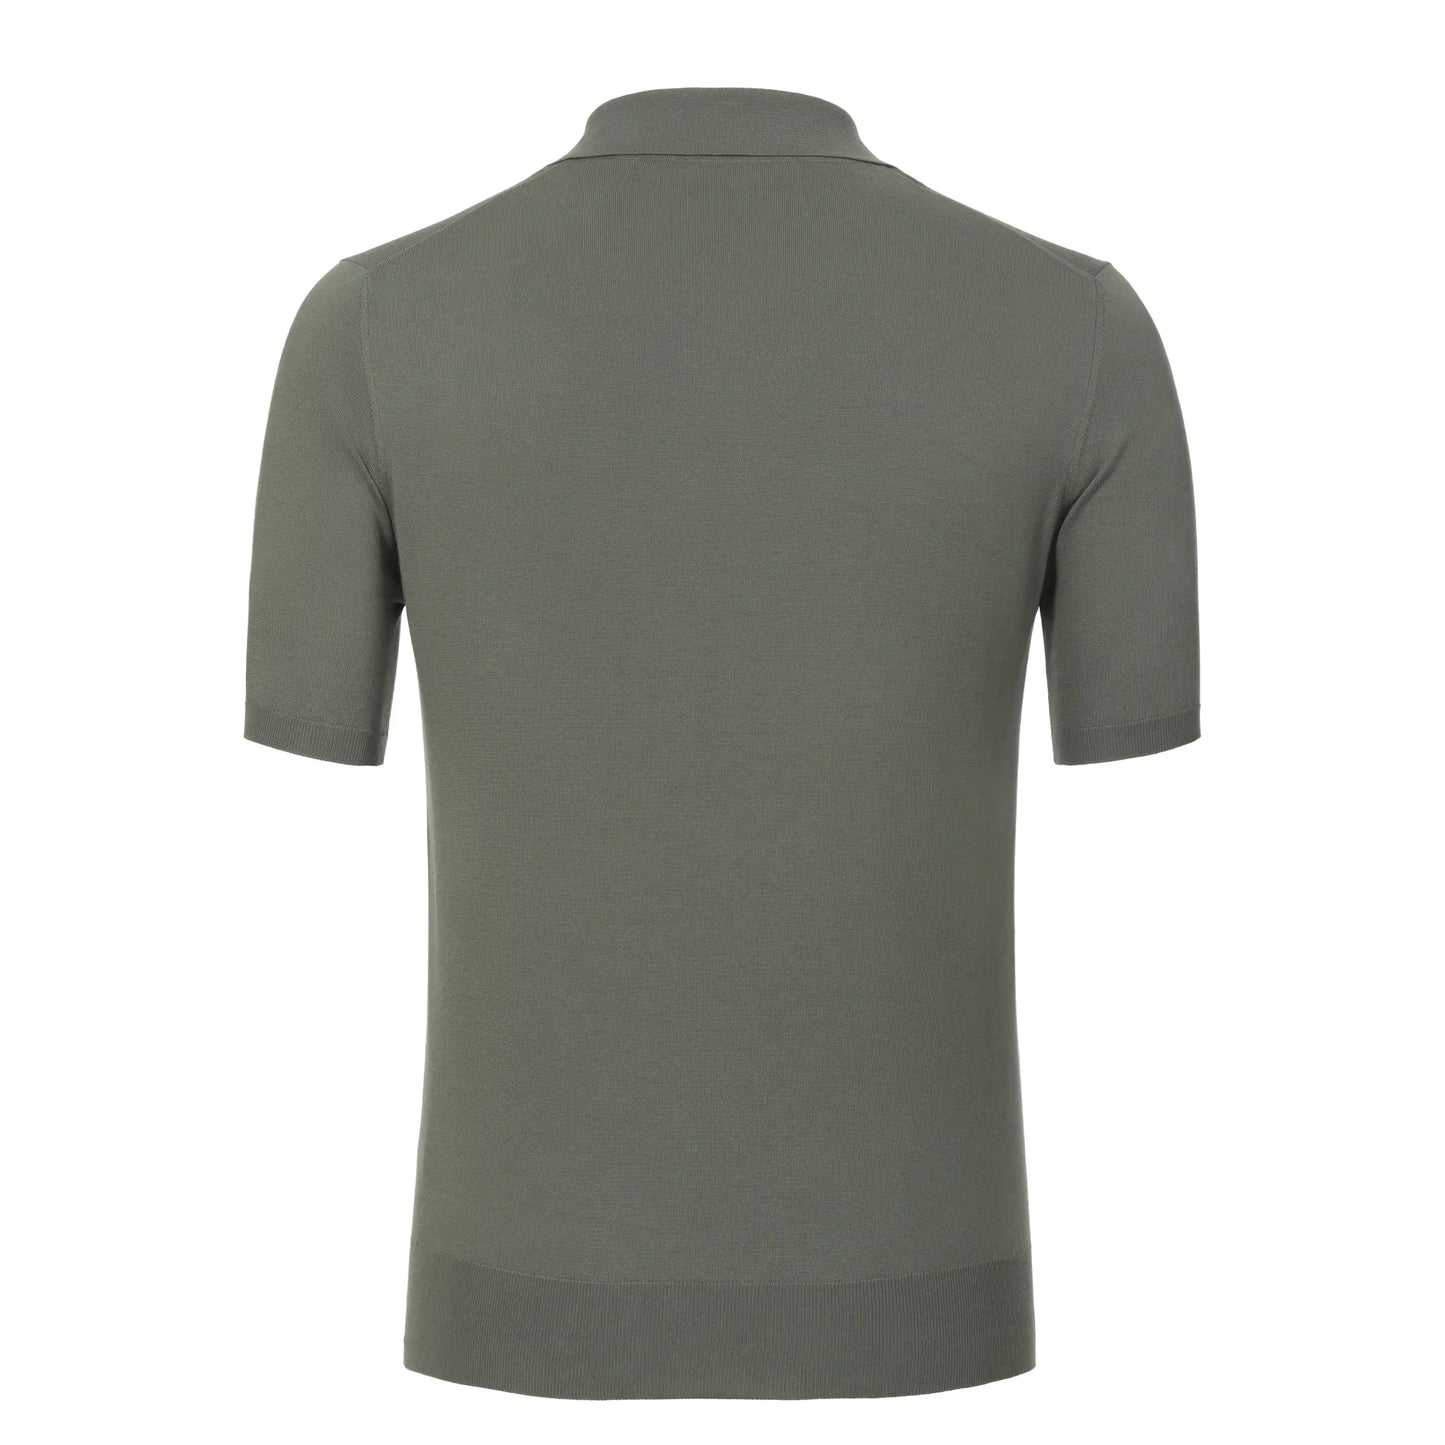 Cruciani Cotton Dark Green Sweater Polo Shirt - SARTALE